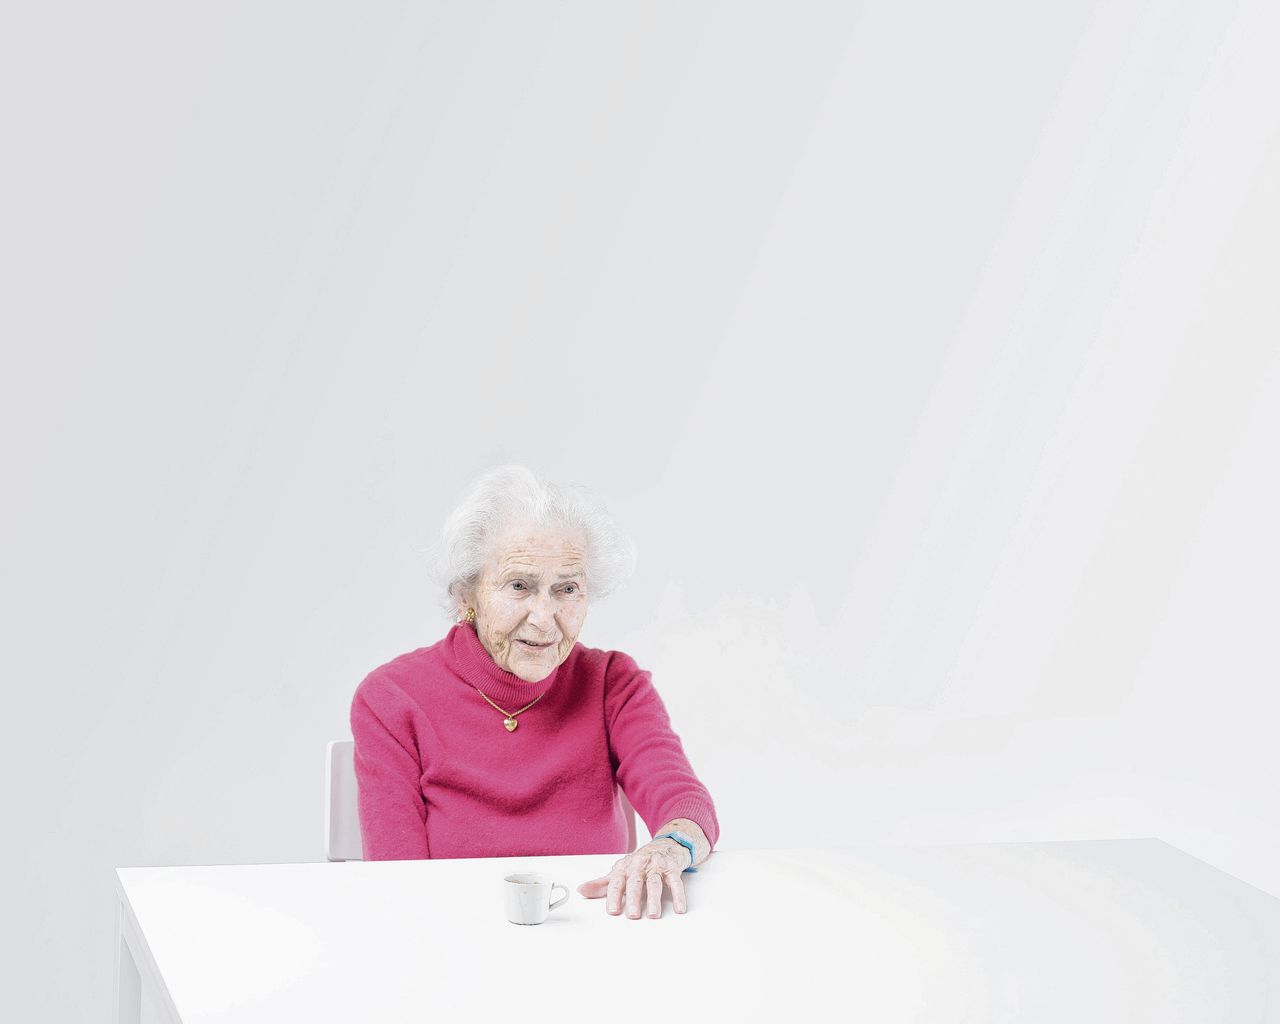 De 100-jarige Jeanne-Marie Dudan, vastgelegd door fotograaf Matthieu Gafsou voor zijn serie H+.